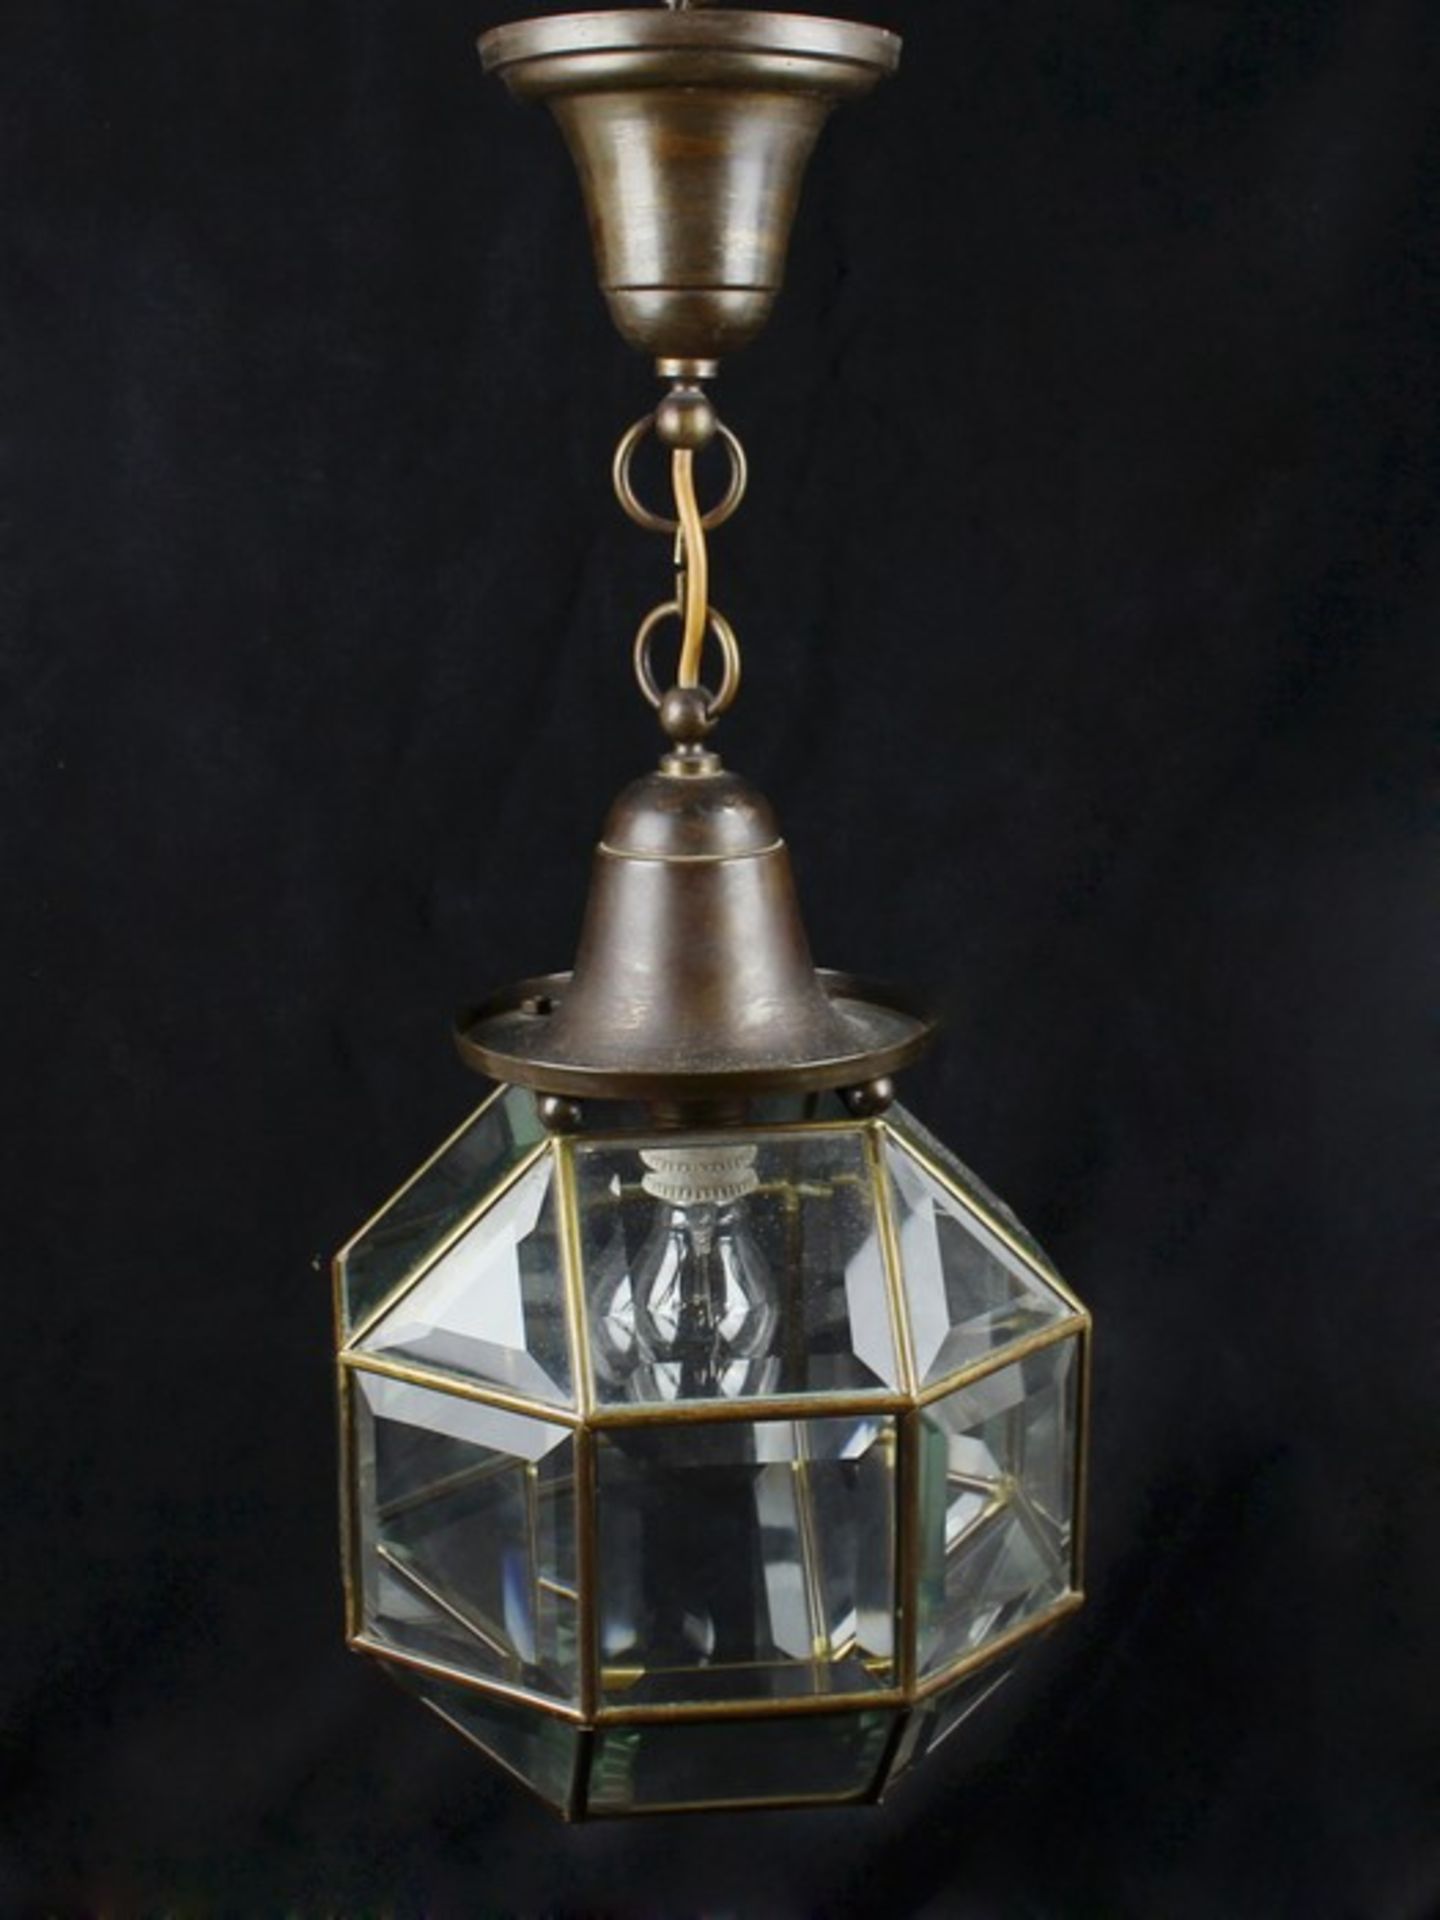 DeckenlampeMetall/Glas, einflammig, Laternenform, oktogonaler Korpus, facettiertes Glas,